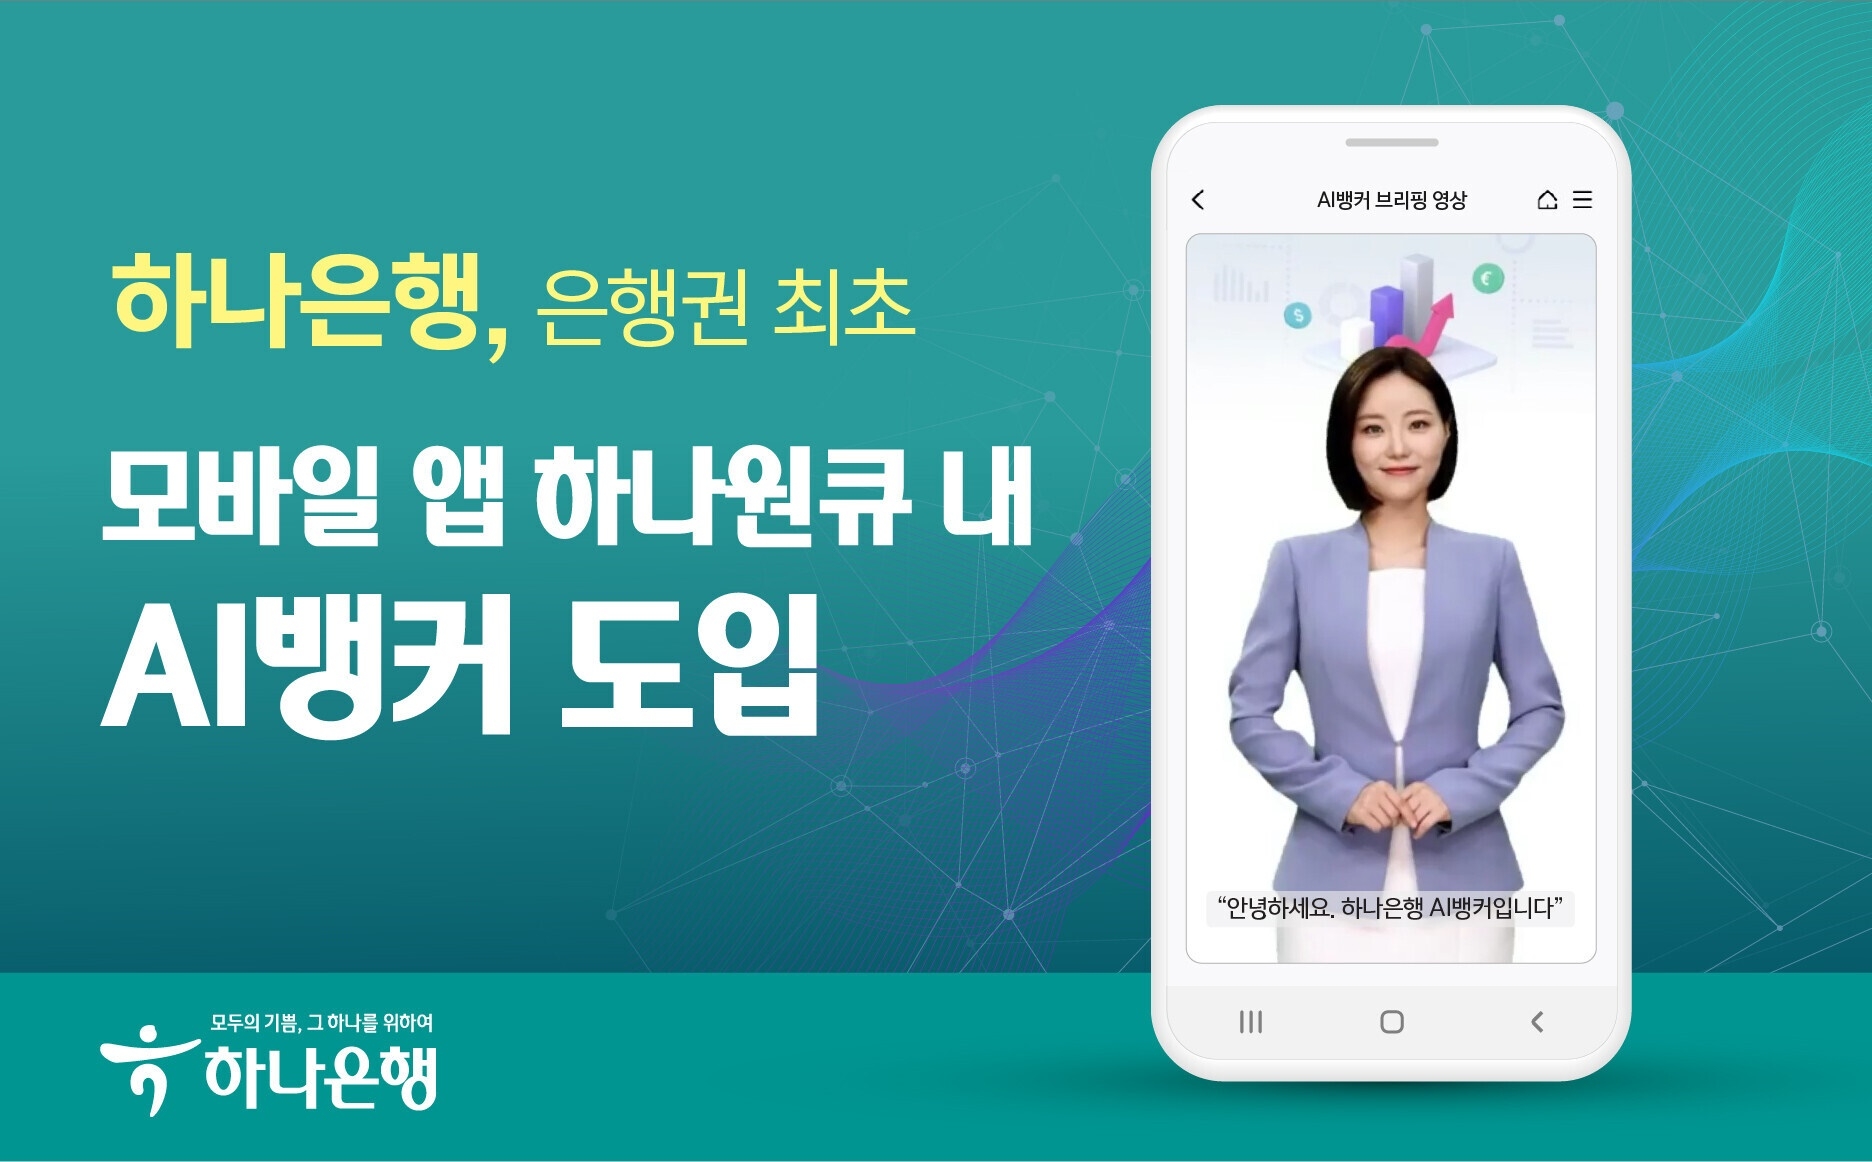 하나은행, 은행권 최초 모바일 앱 하나원큐 내 AI뱅커 도입